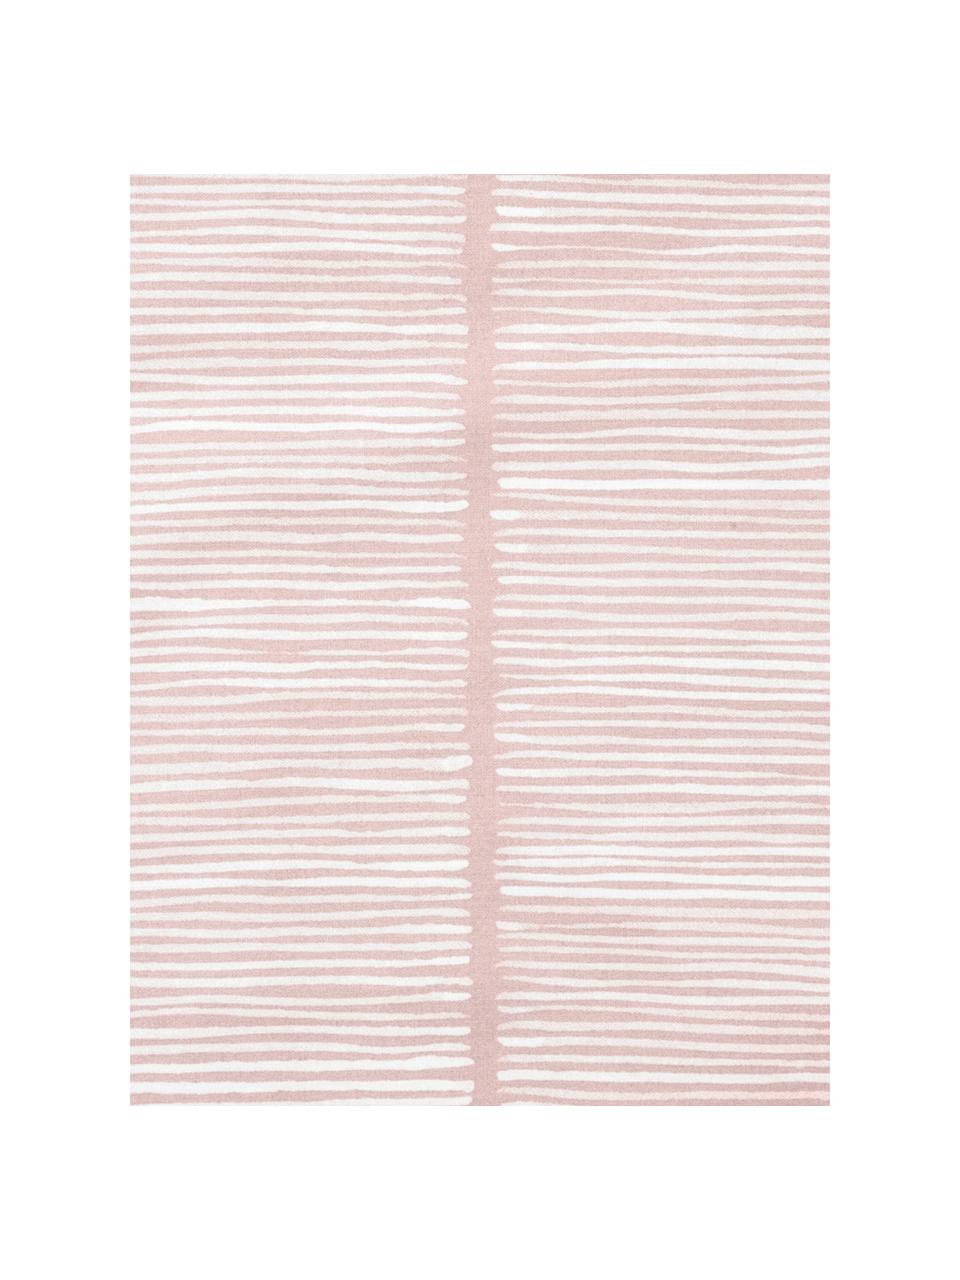 Poszewka na poduszkę z bawełny renforcé Paulina, 2 szt., Blady różowy, biały, S 40 x D 80 cm